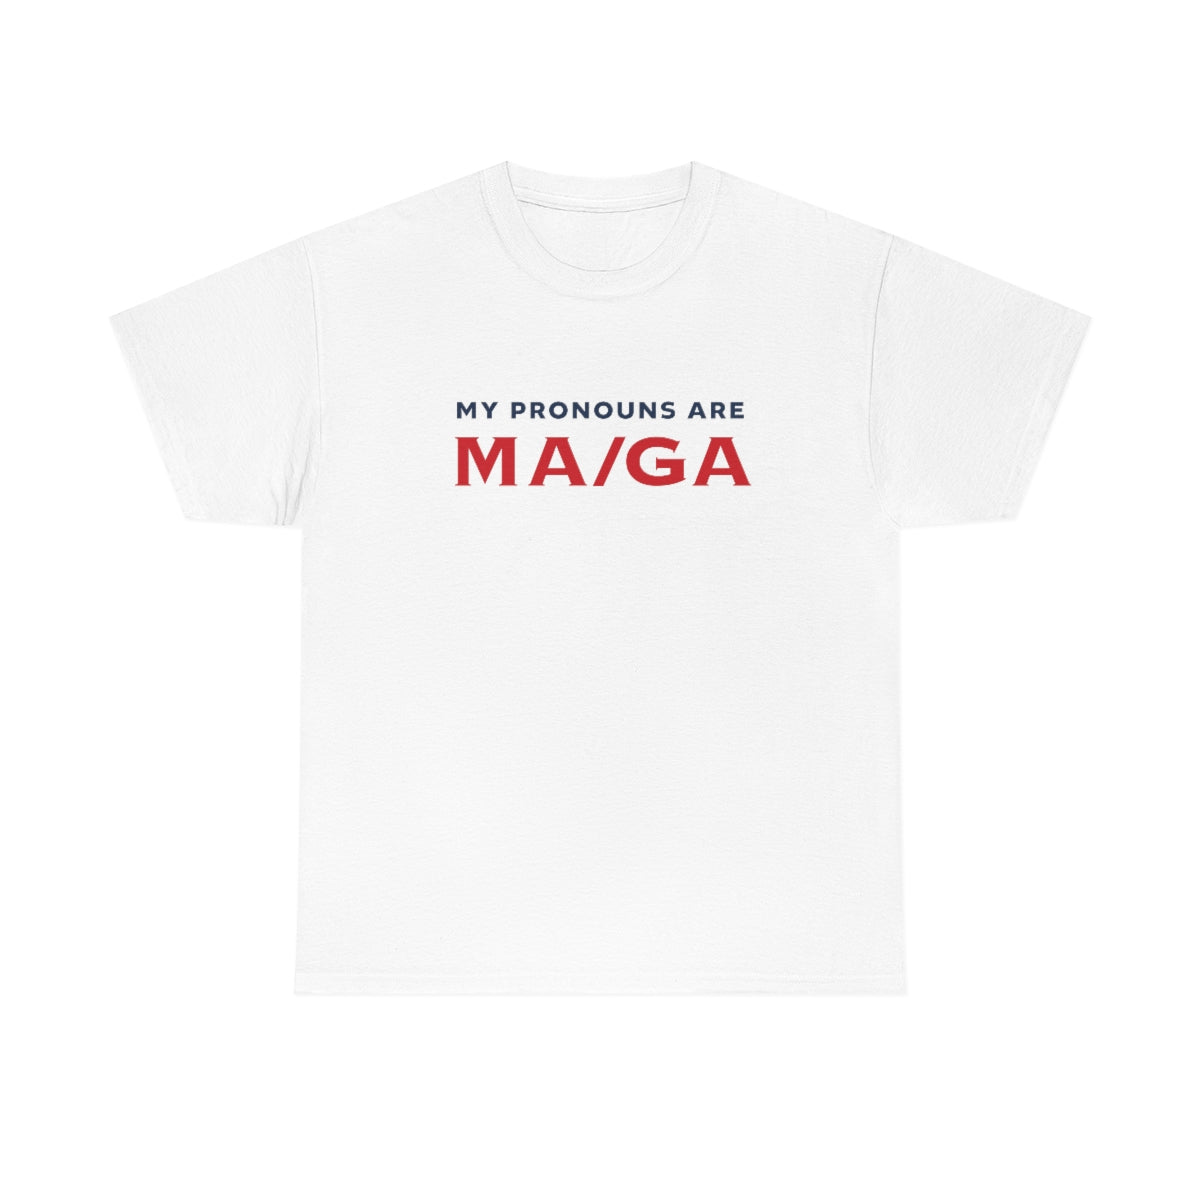 My Pronouns are MA/GA T-shirt